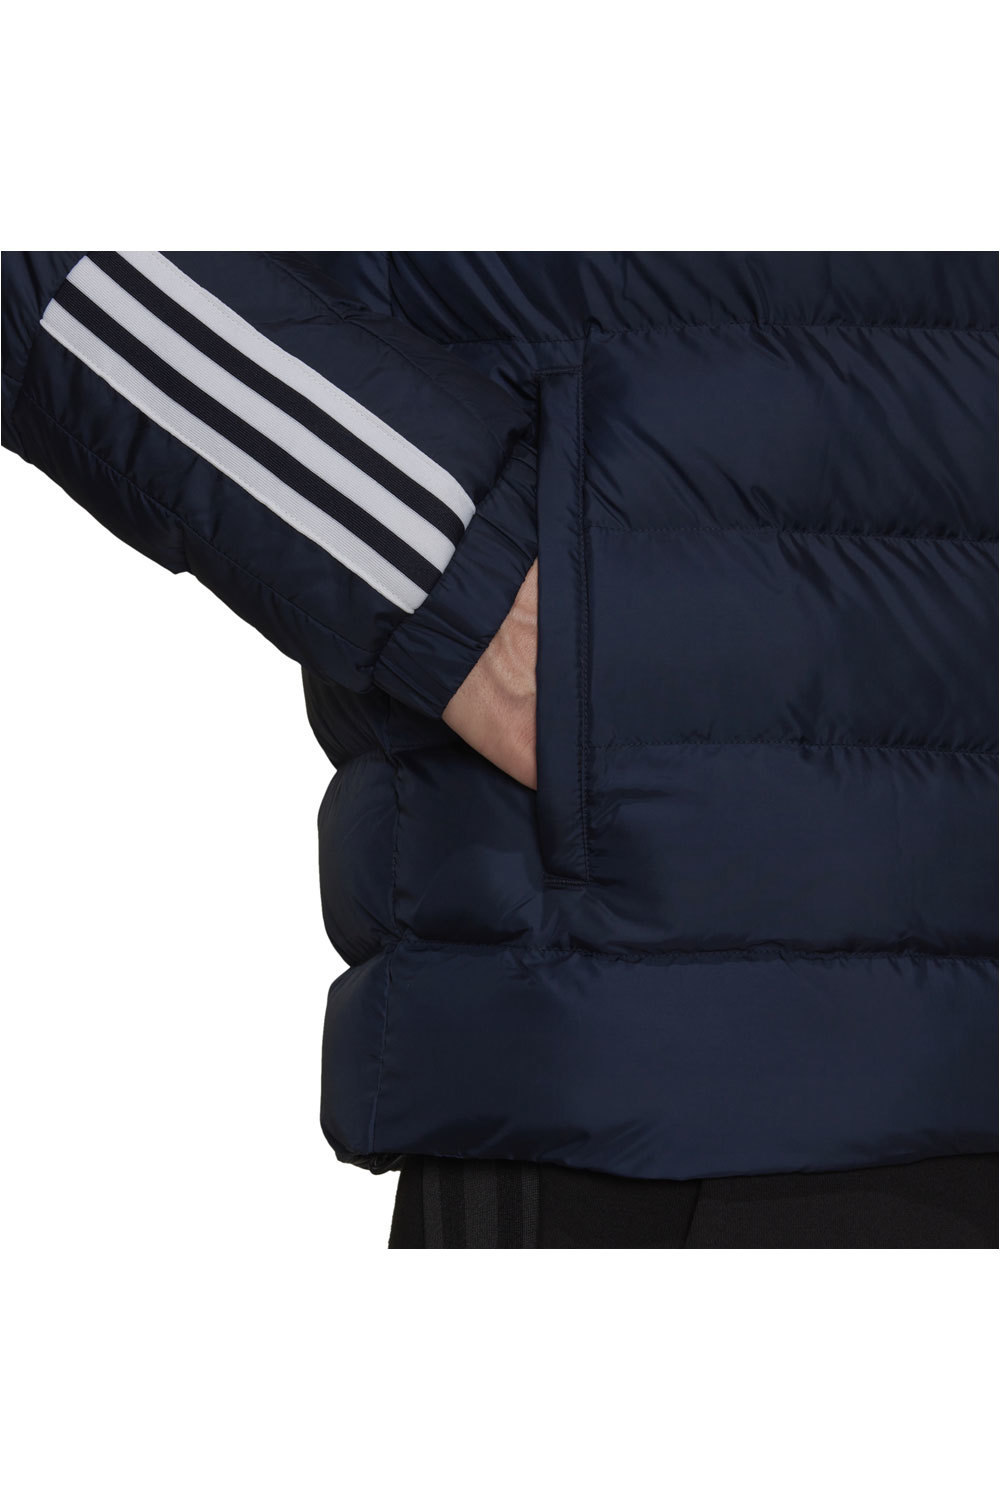 adidas chaqueta outdoor hombre Itavic Midweight 3 bandas con capucha vista detalle